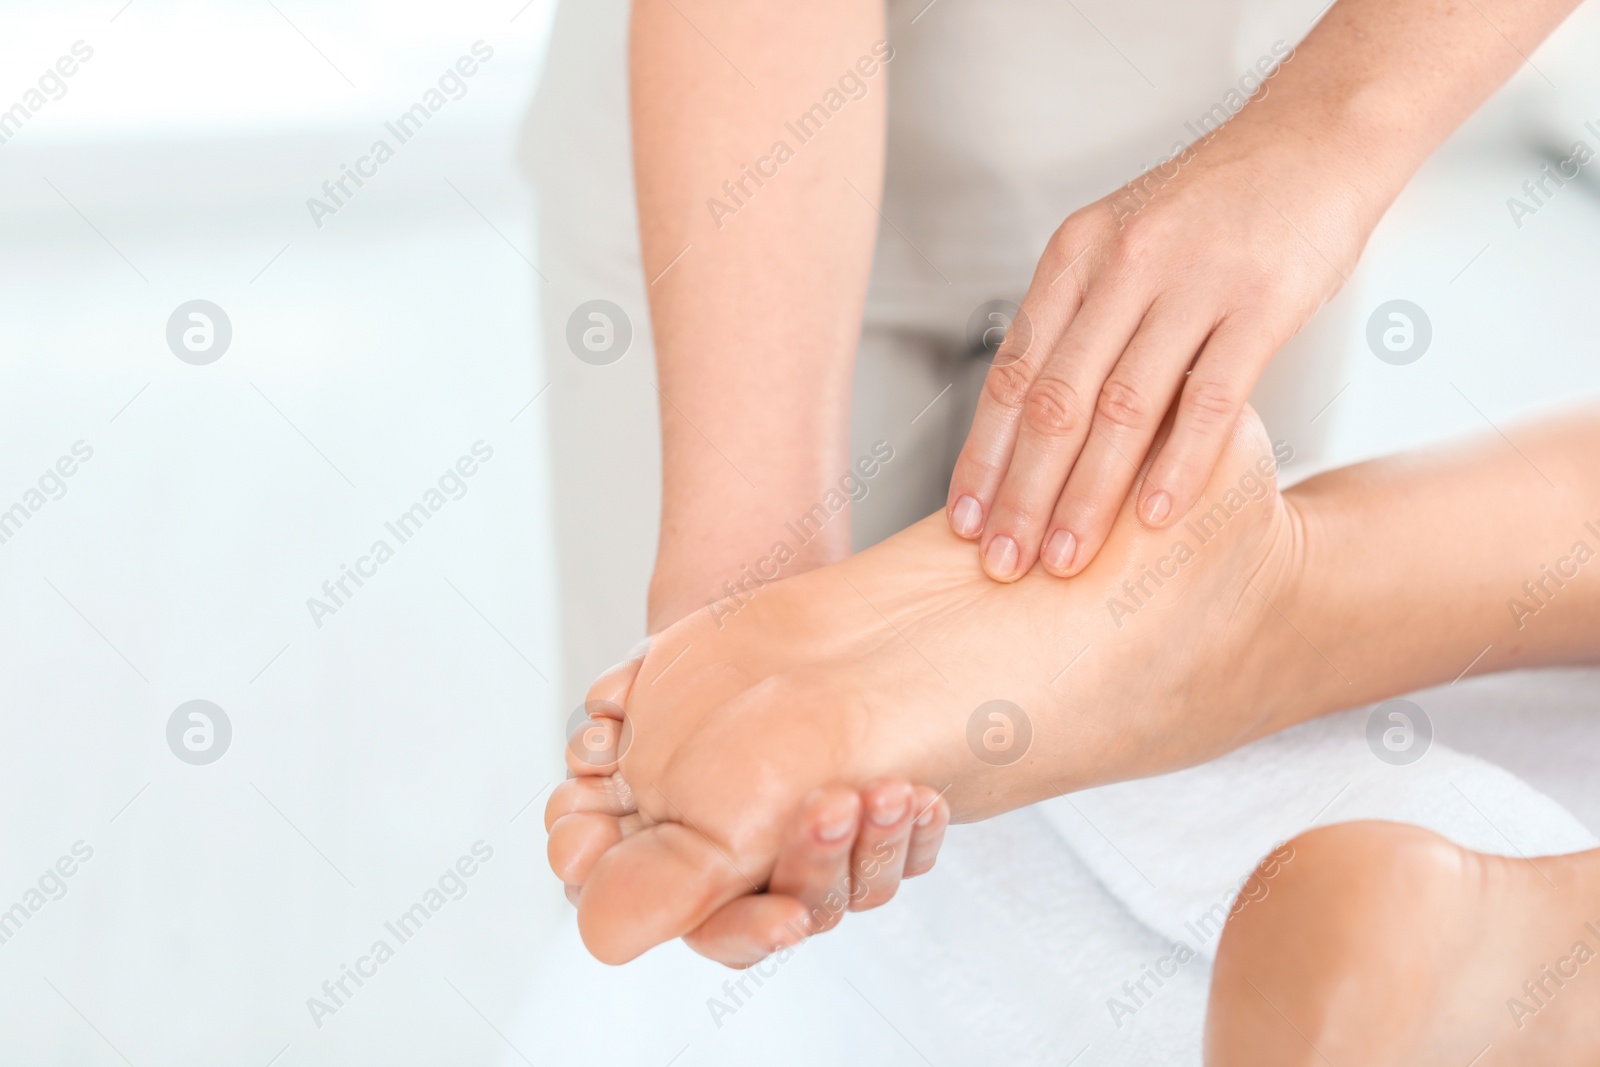 Photo of Woman receiving foot massage in wellness center, closeup